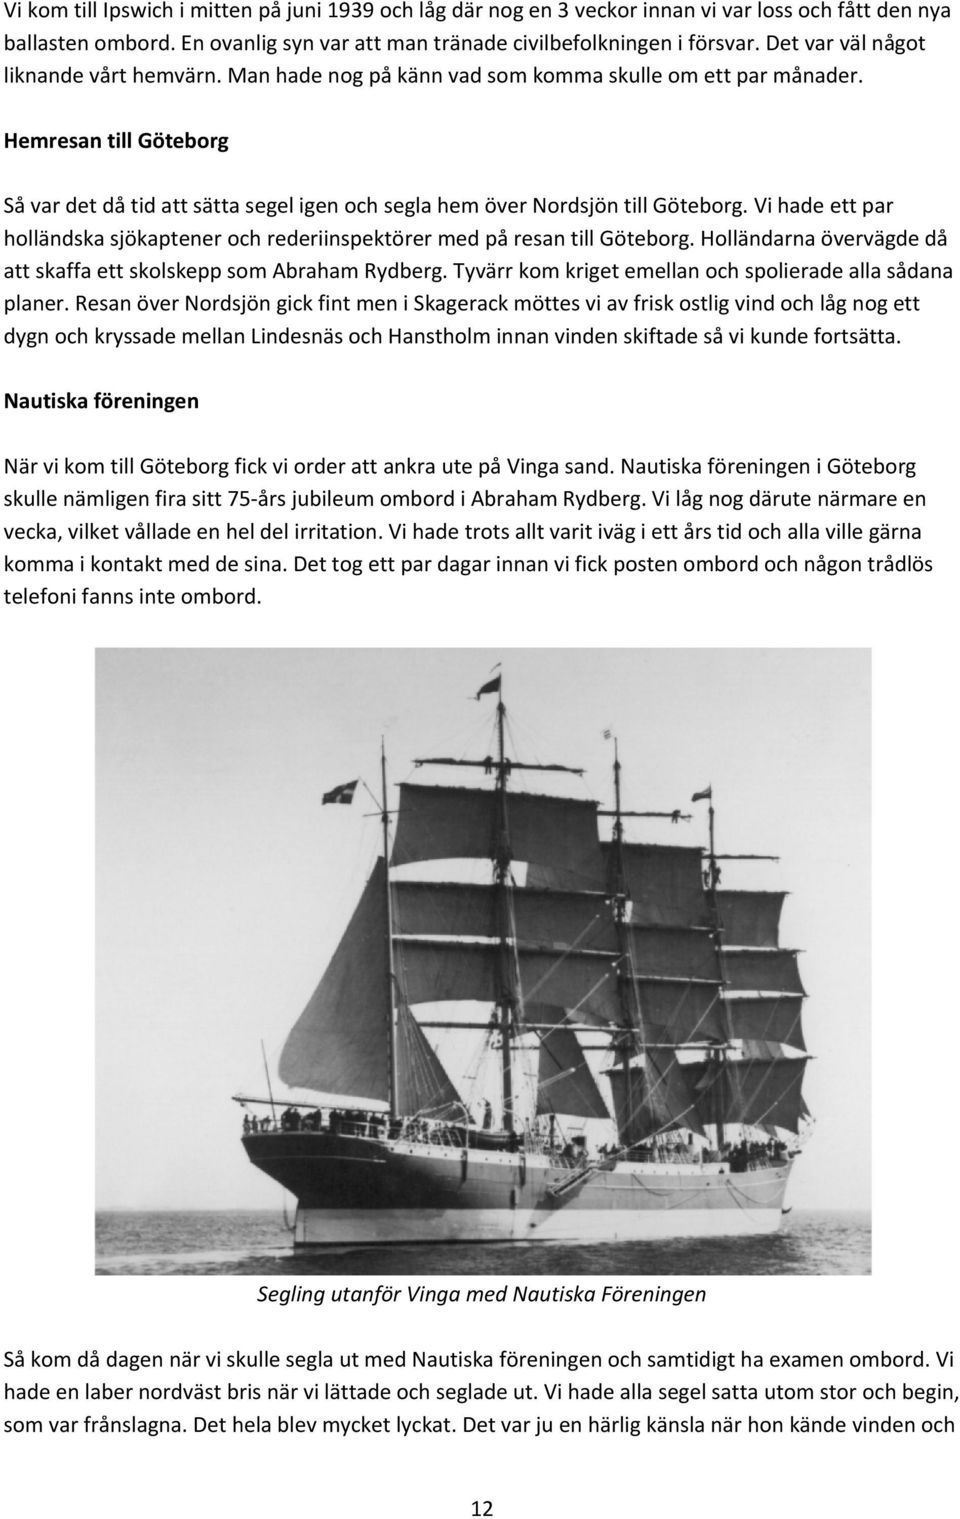 Hemresan till Göteborg Så var det då tid att sätta segel igen och segla hem över Nordsjön till Göteborg. Vi hade ett par holländska sjökaptener och rederiinspektörer med på resan till Göteborg.